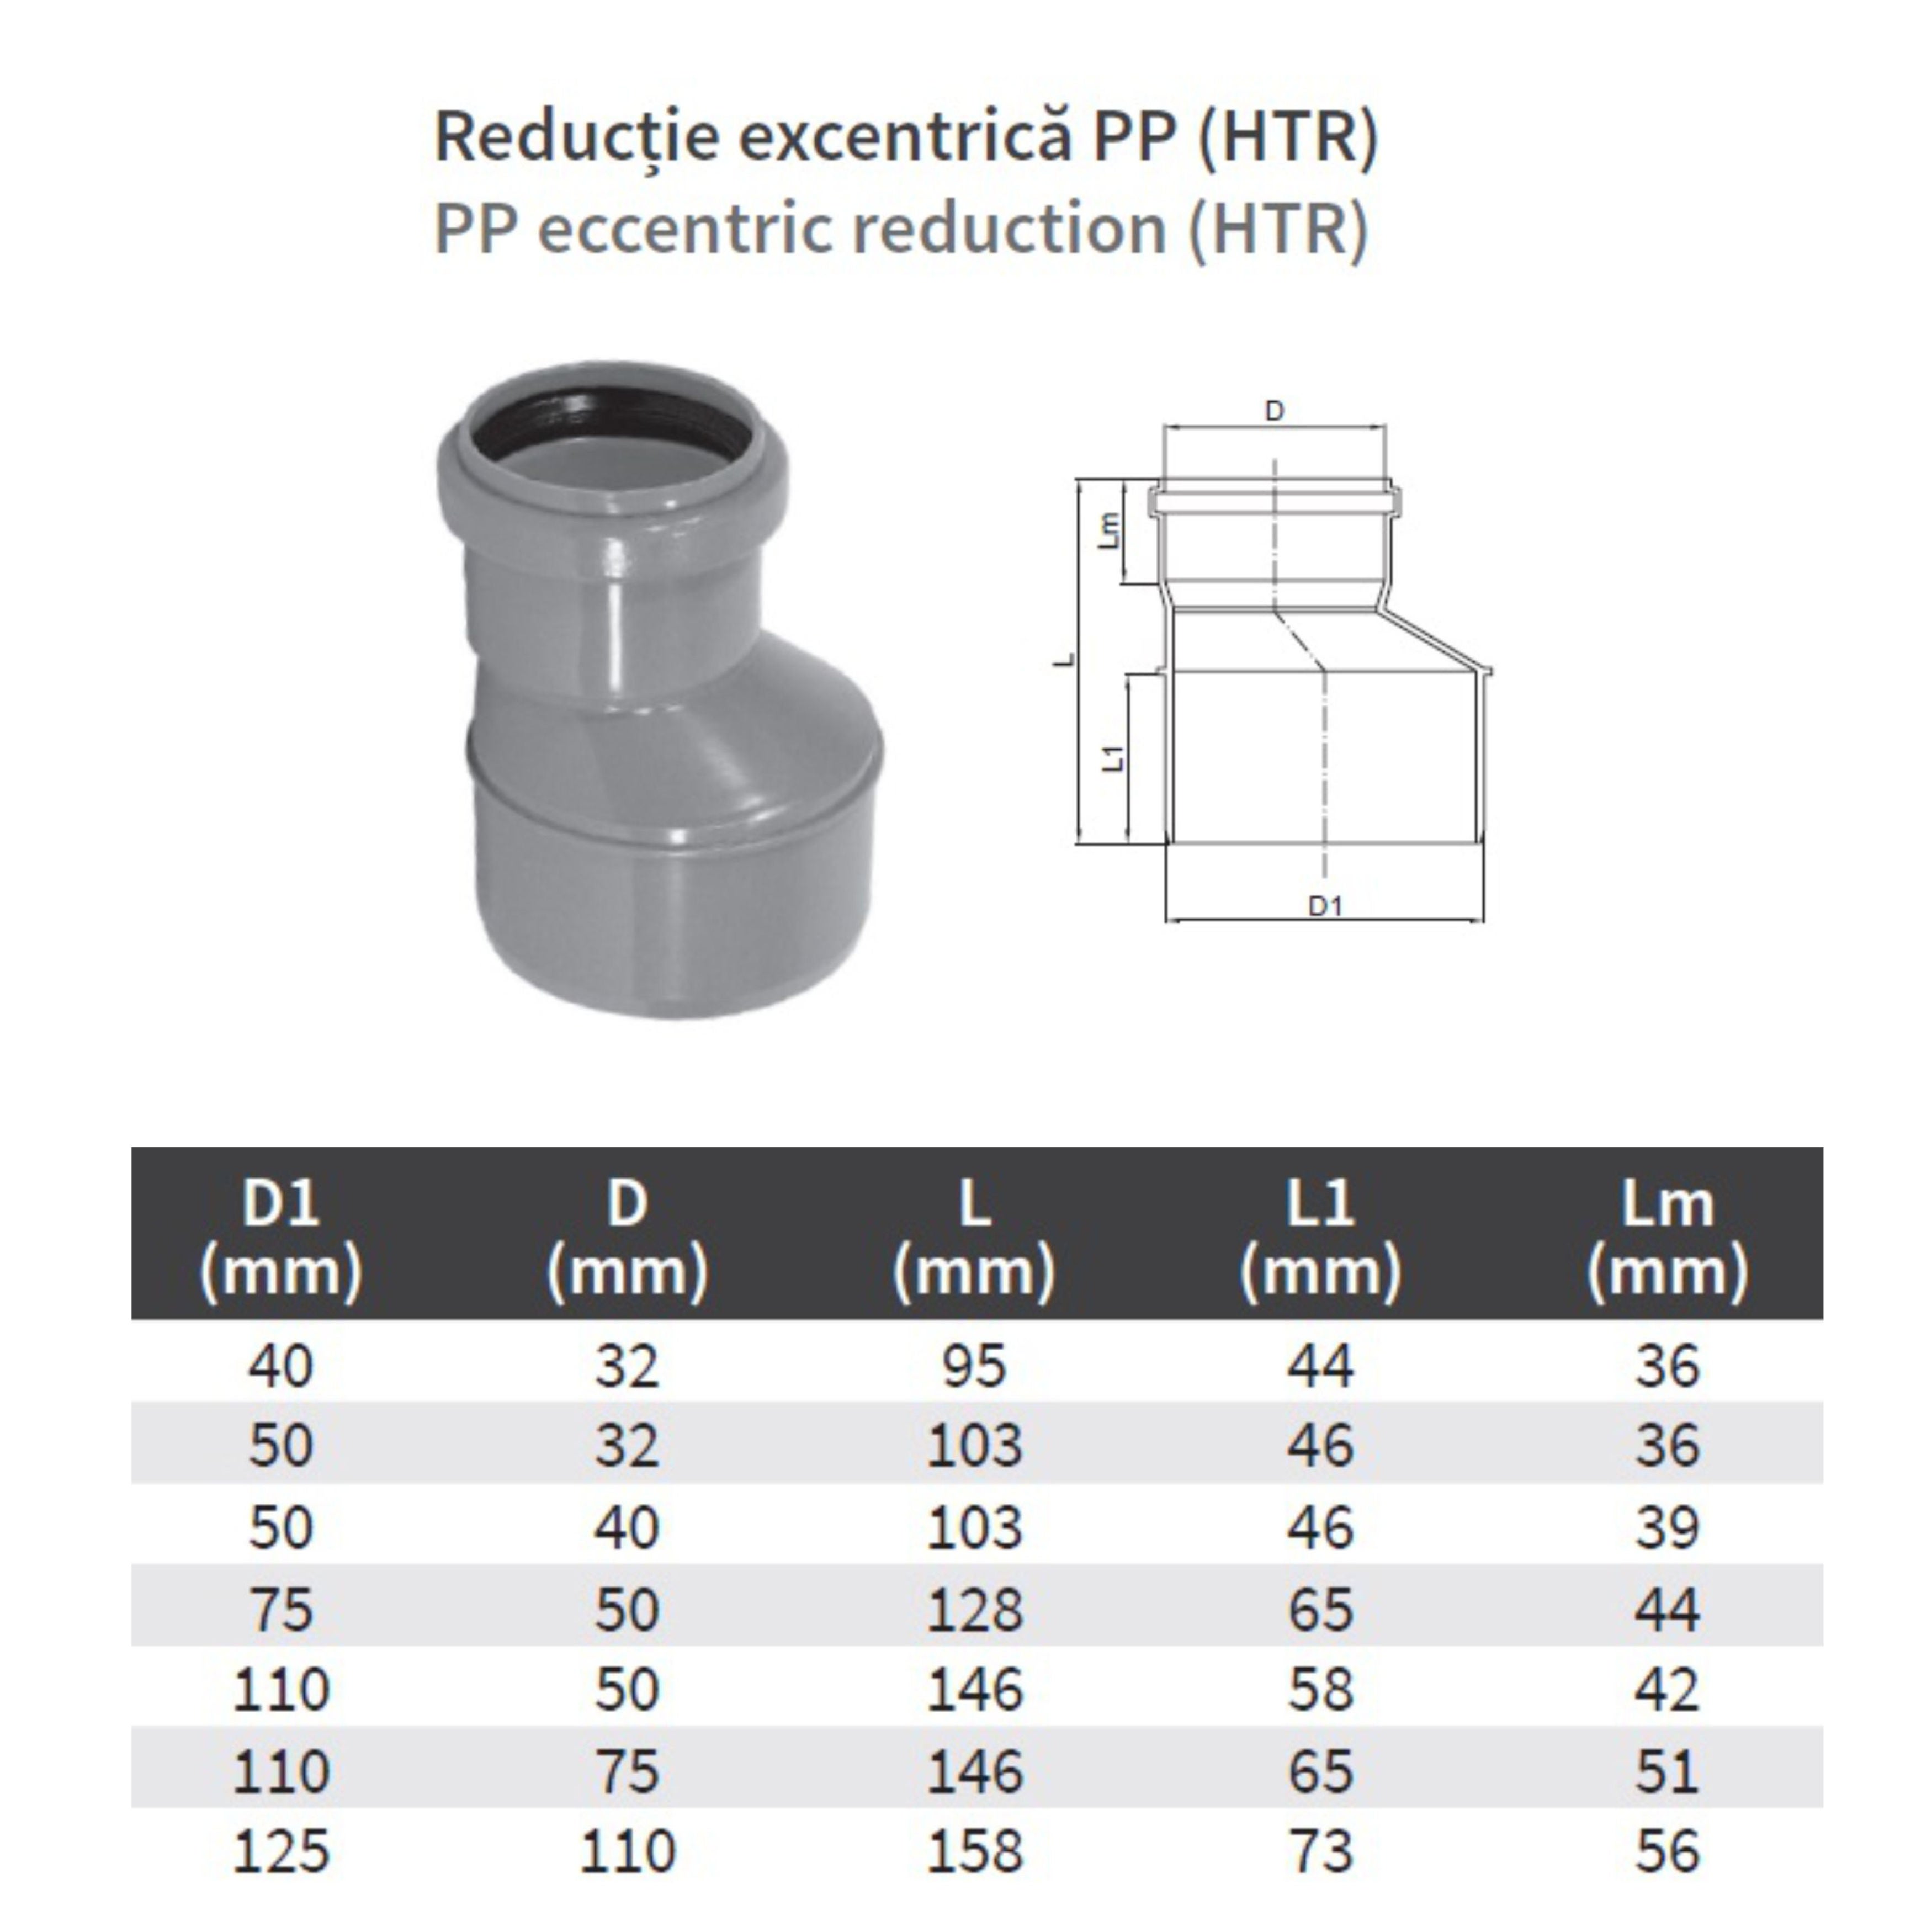 Reductie excentrica PP HTRA, pentru scurgere, D 50 mm - D 32 mm